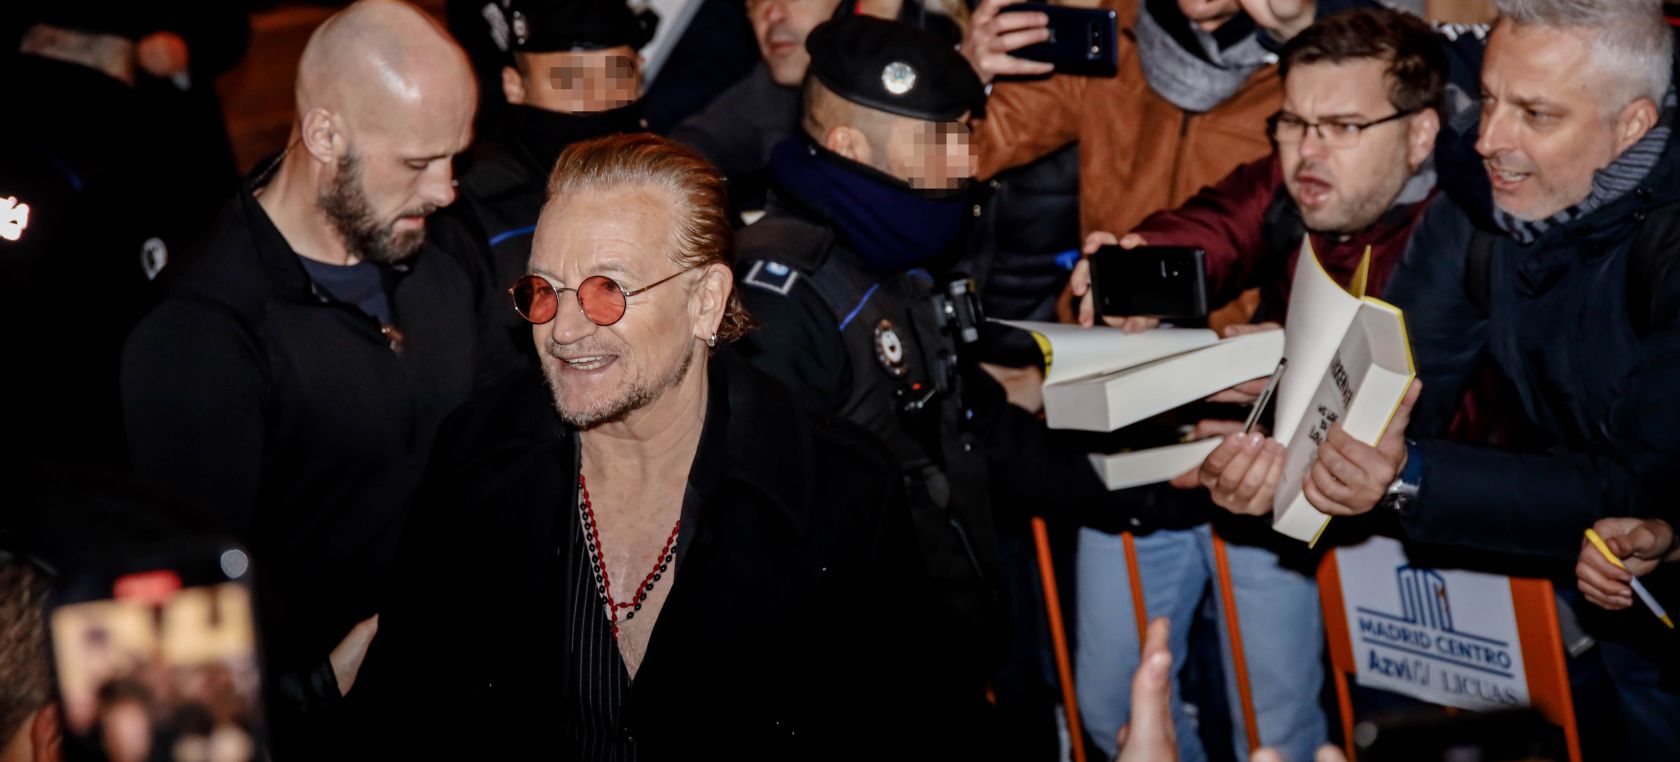 Bono, líder de U2, aparece por sorpresa en una librería del barrio madrileño de Malasaña